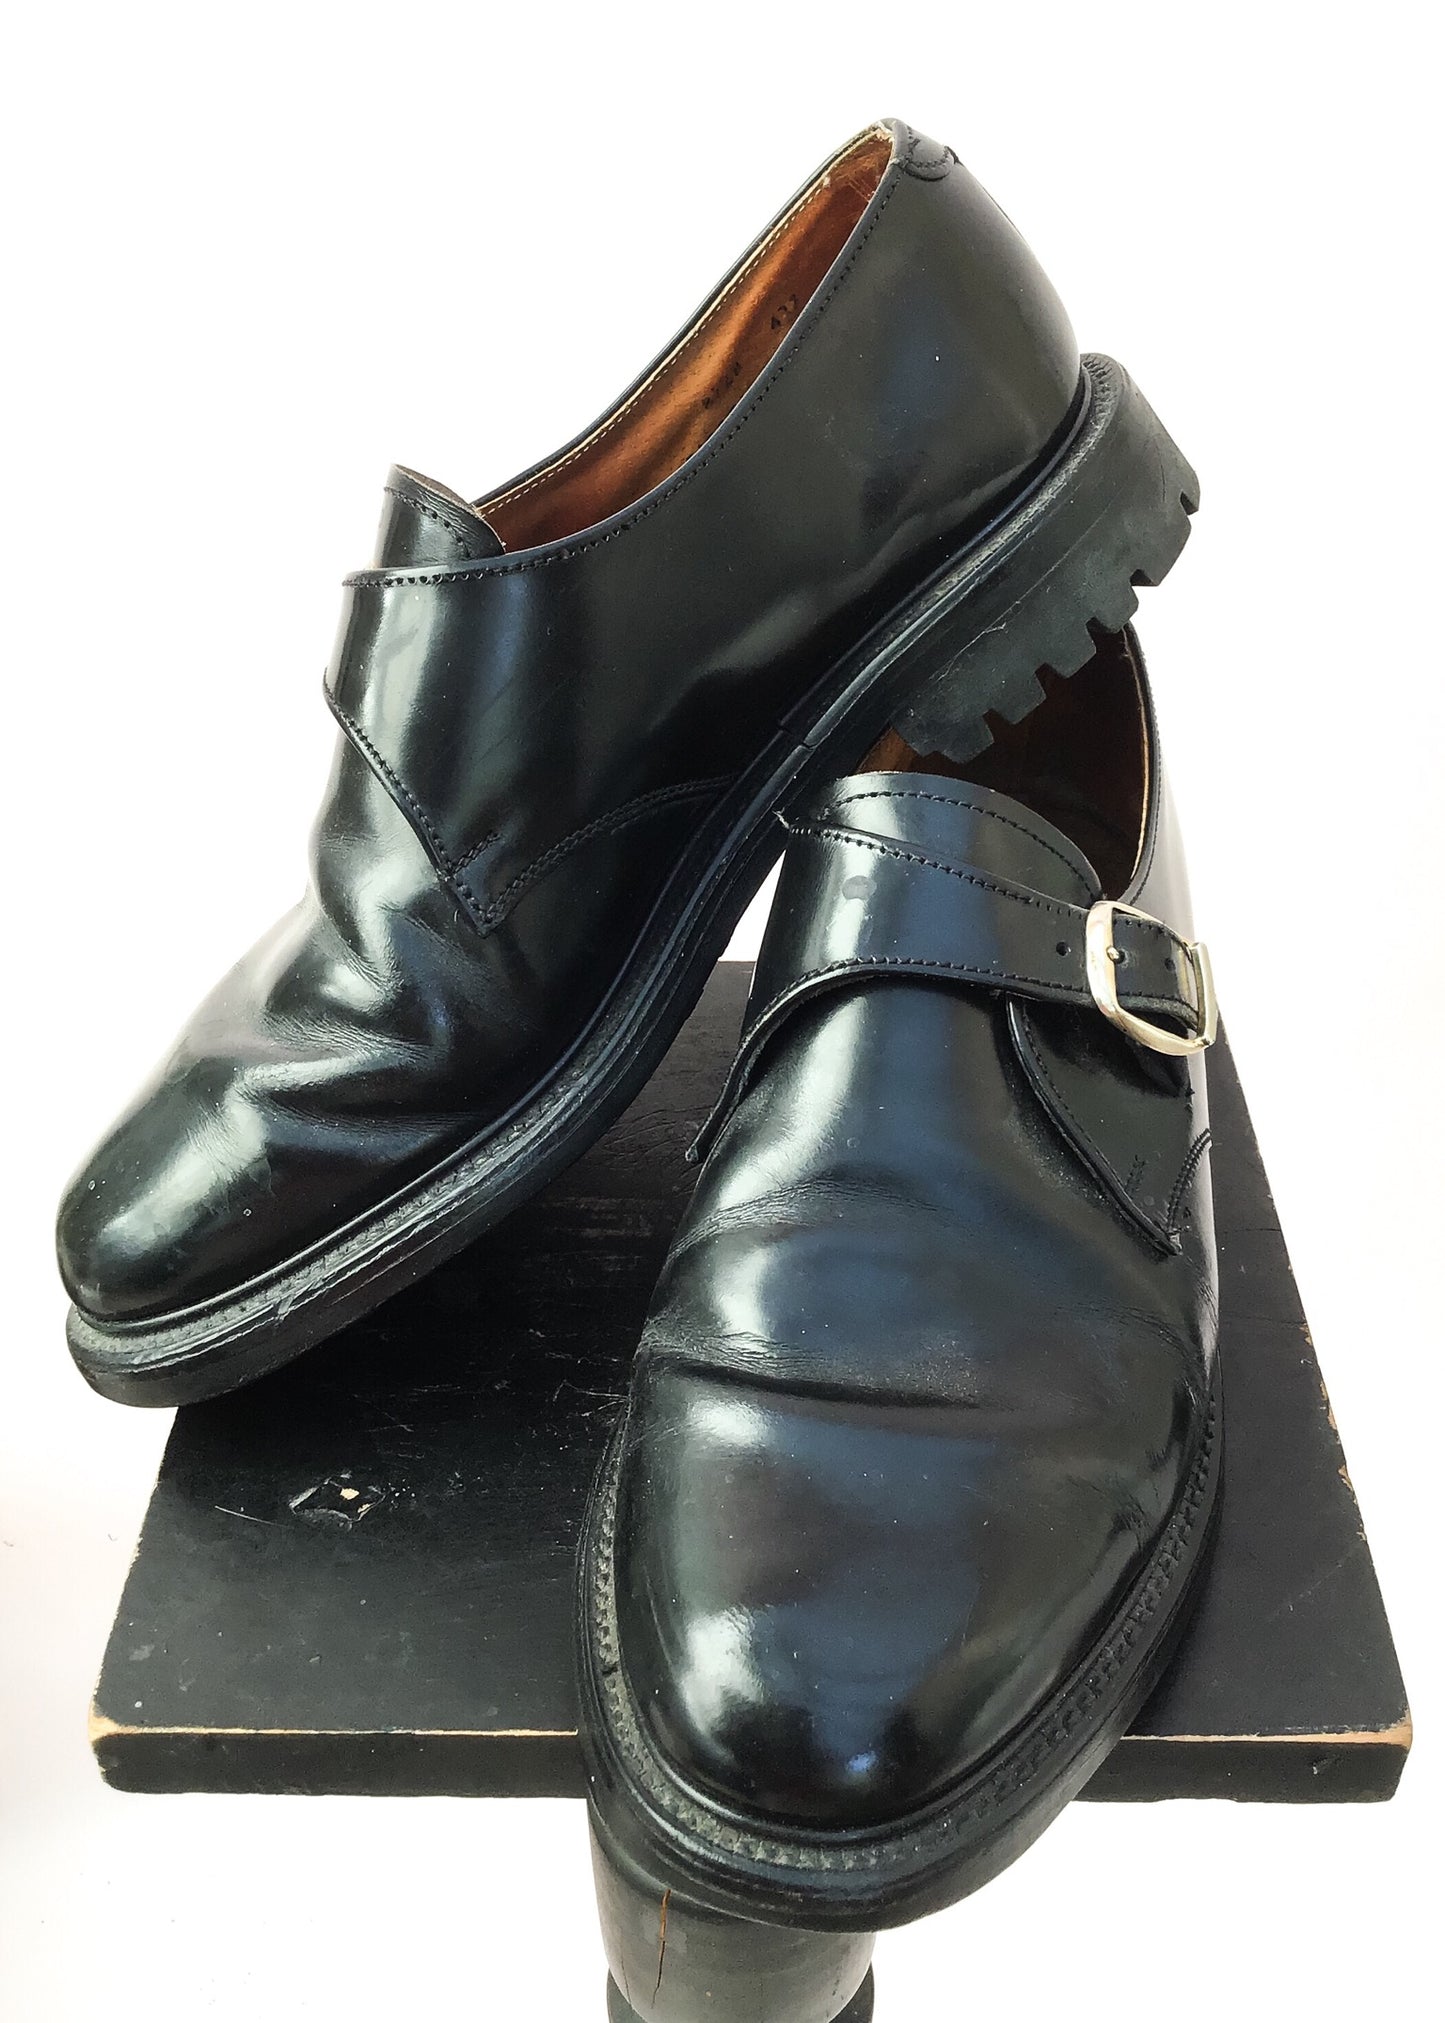 Vintage black leather monk shoes size 8.